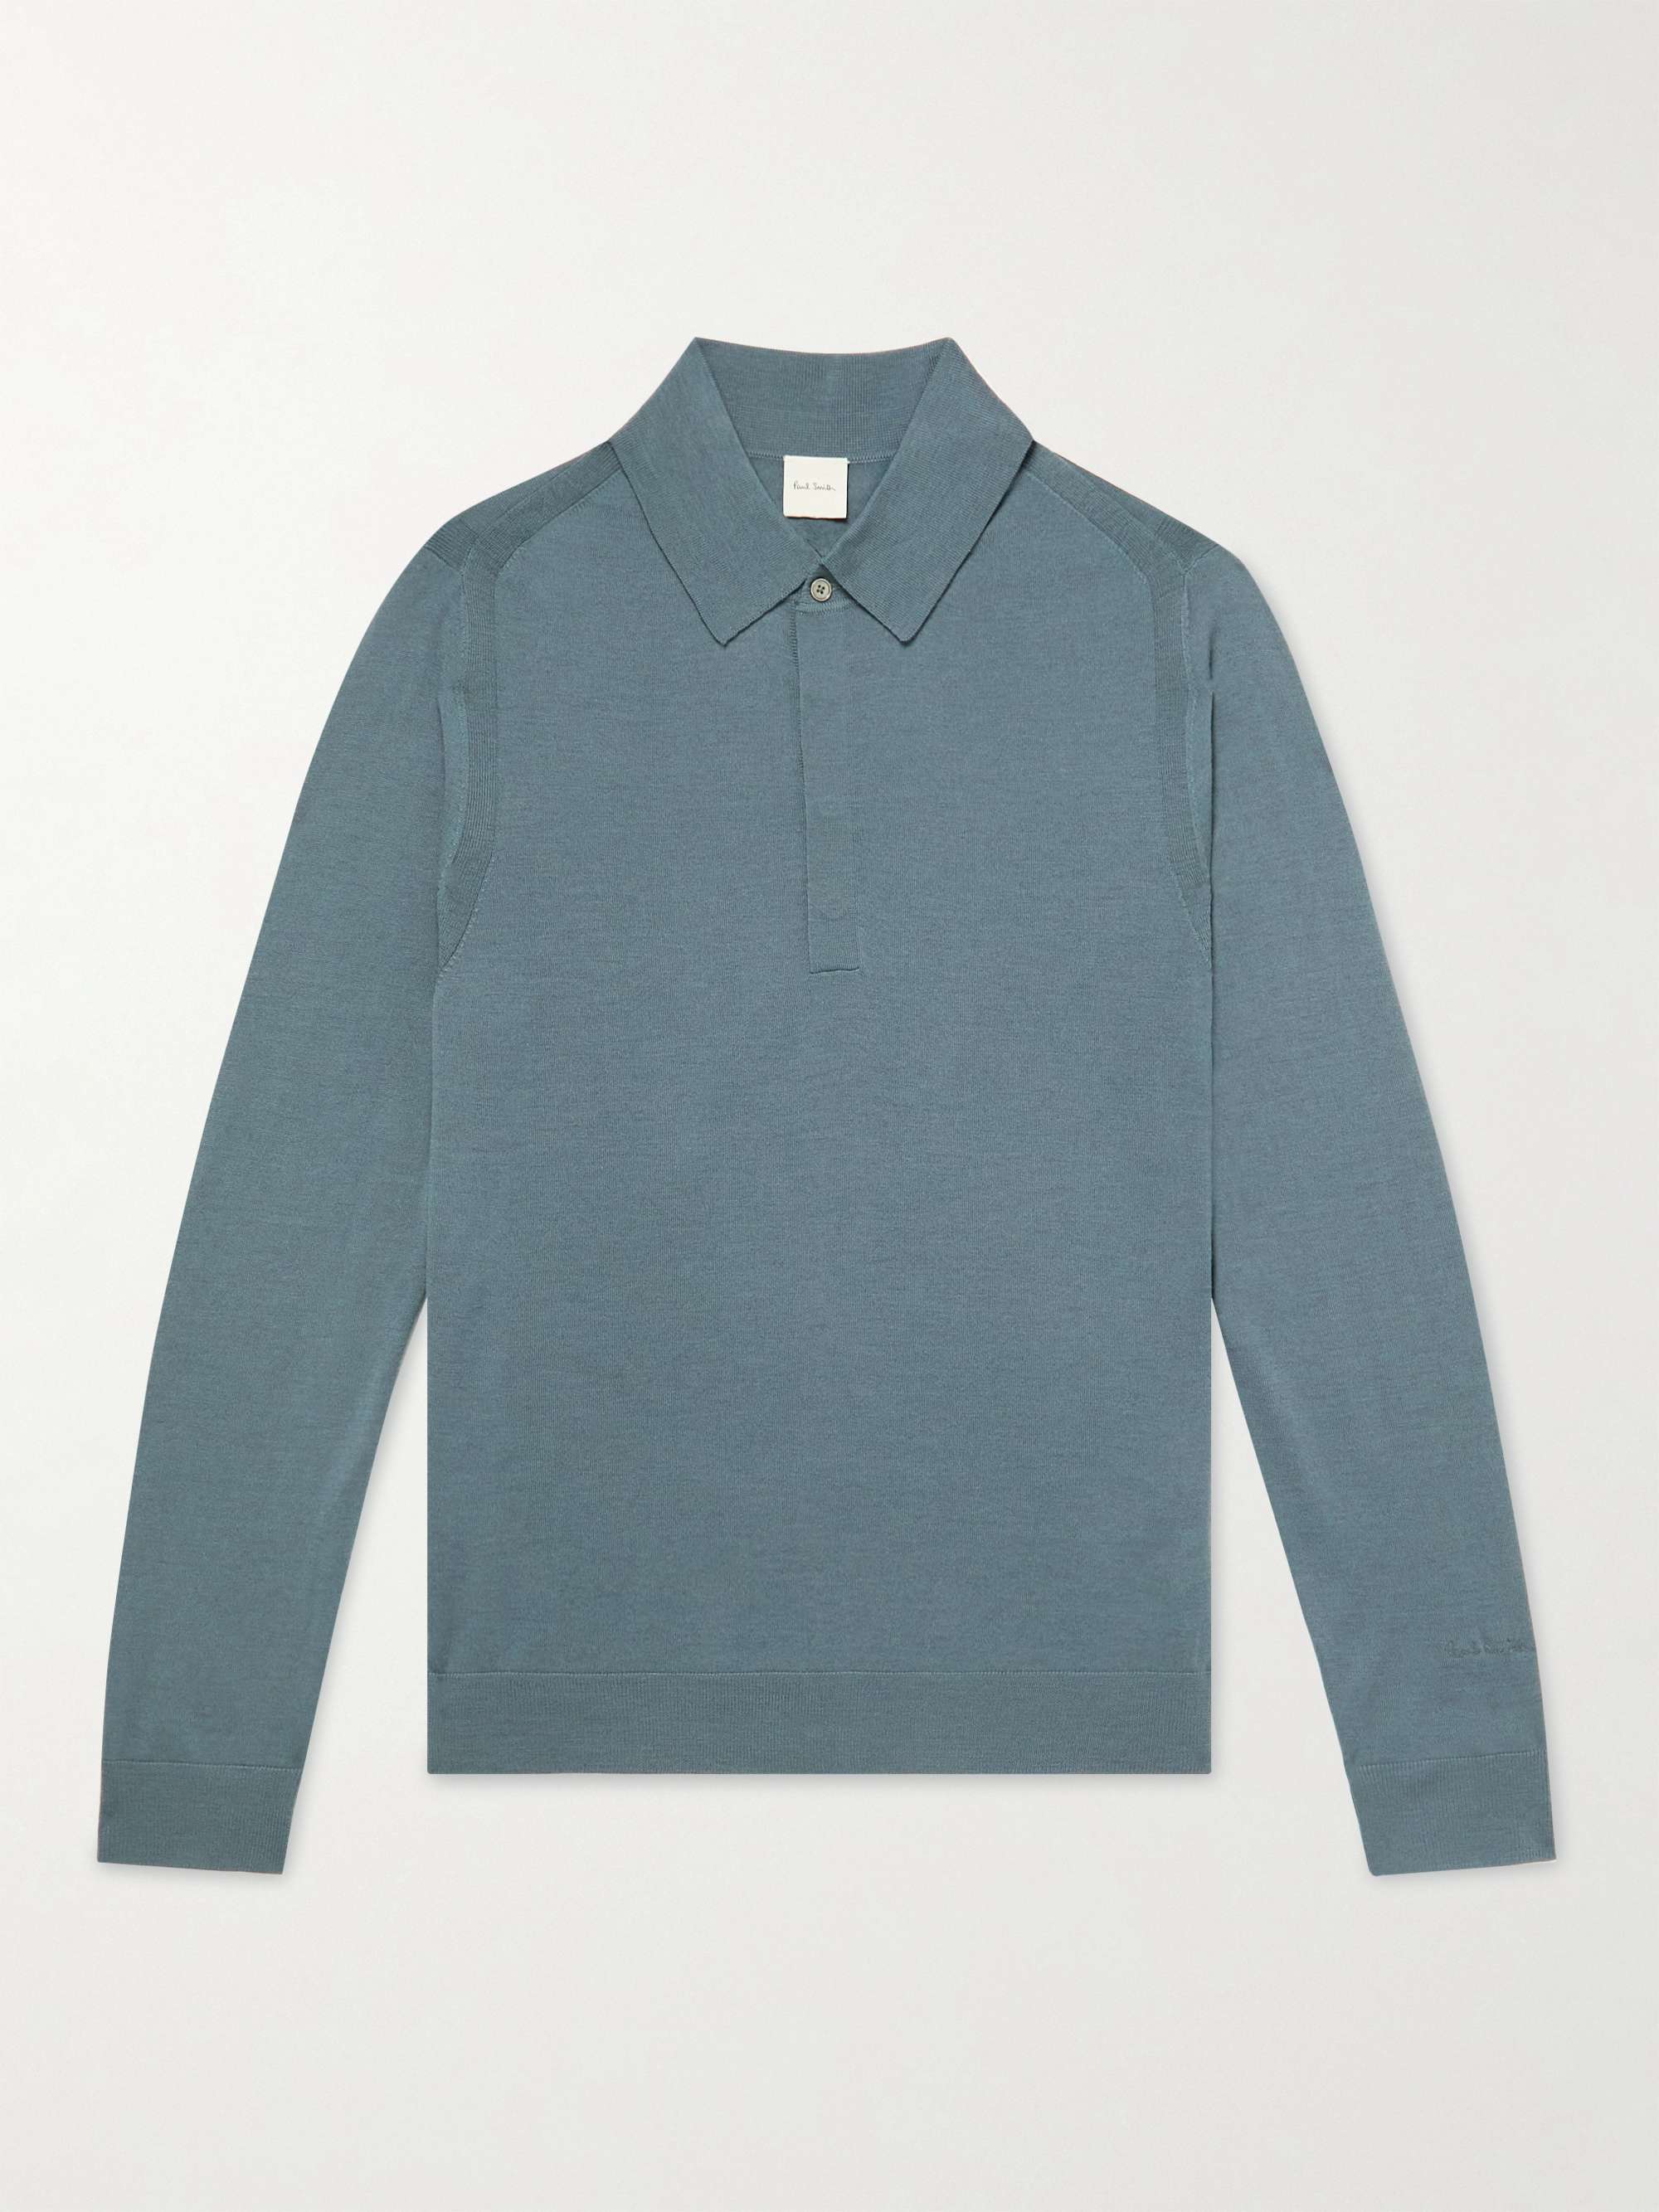 PAUL SMITH Merino Wool Polo Shirt for Men | MR PORTER